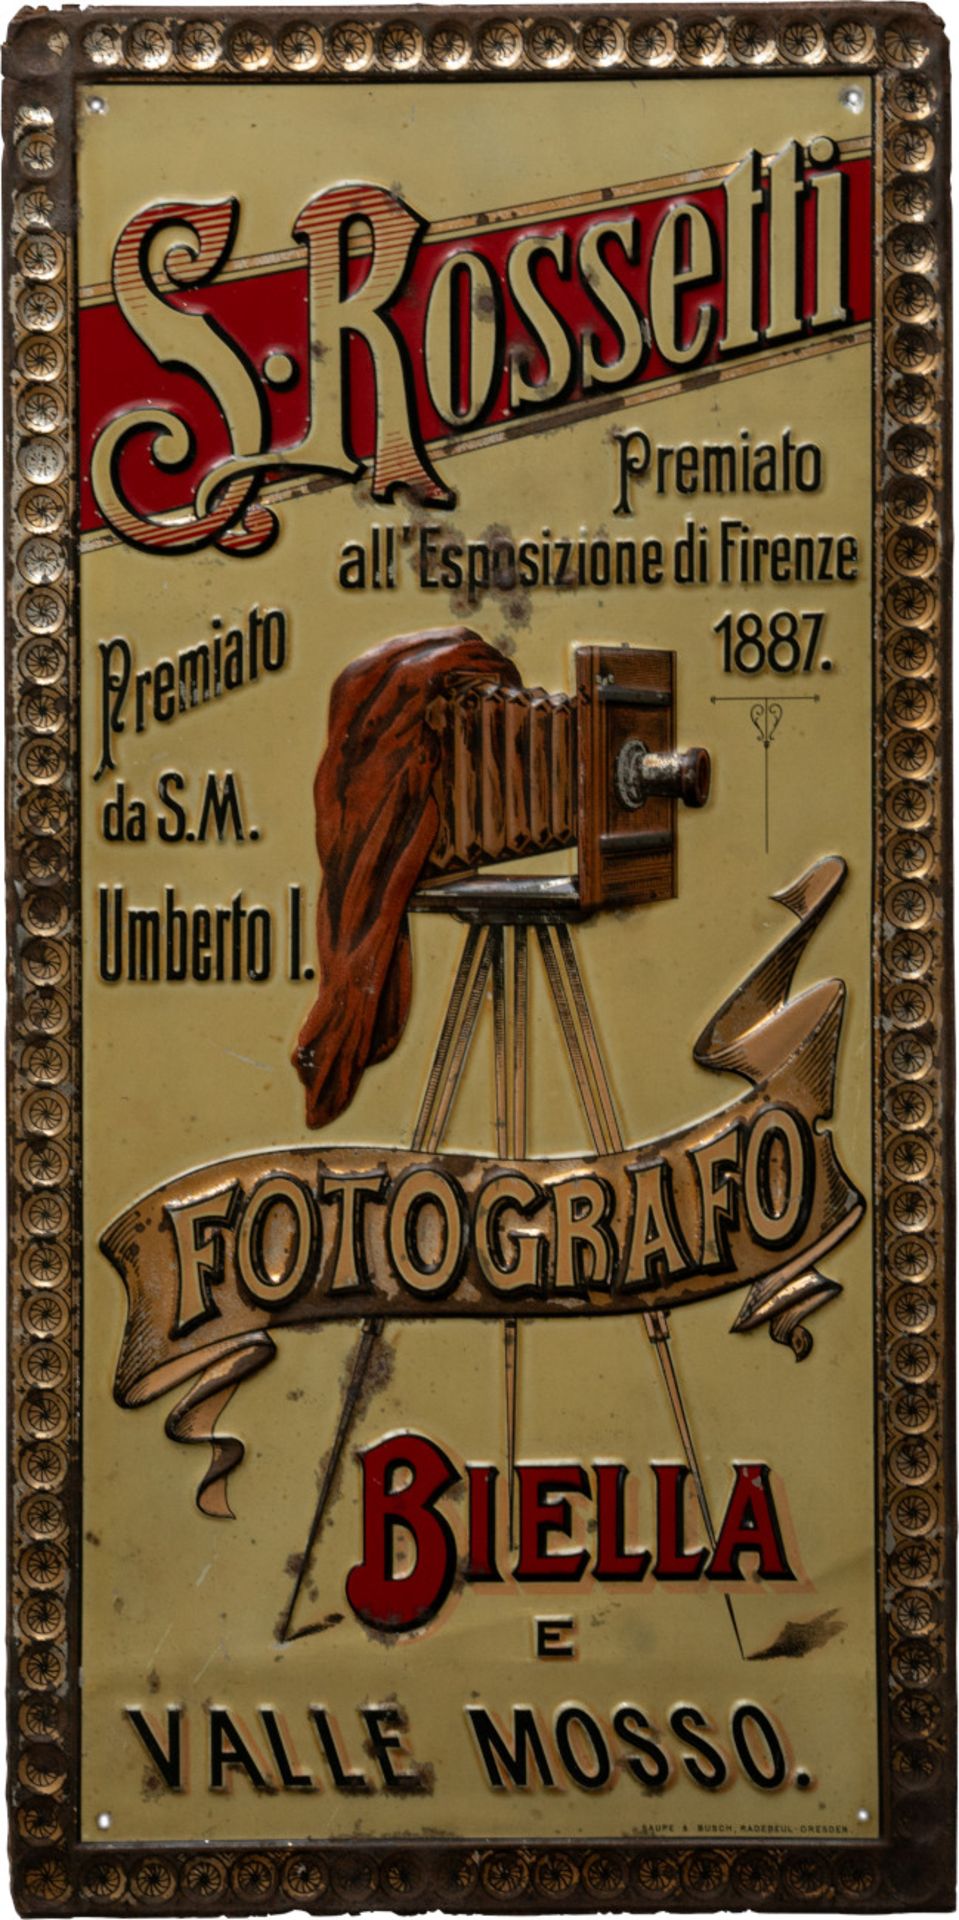 Tin sign S.Rosetti, Fotografo Biella/Italy, around 1900